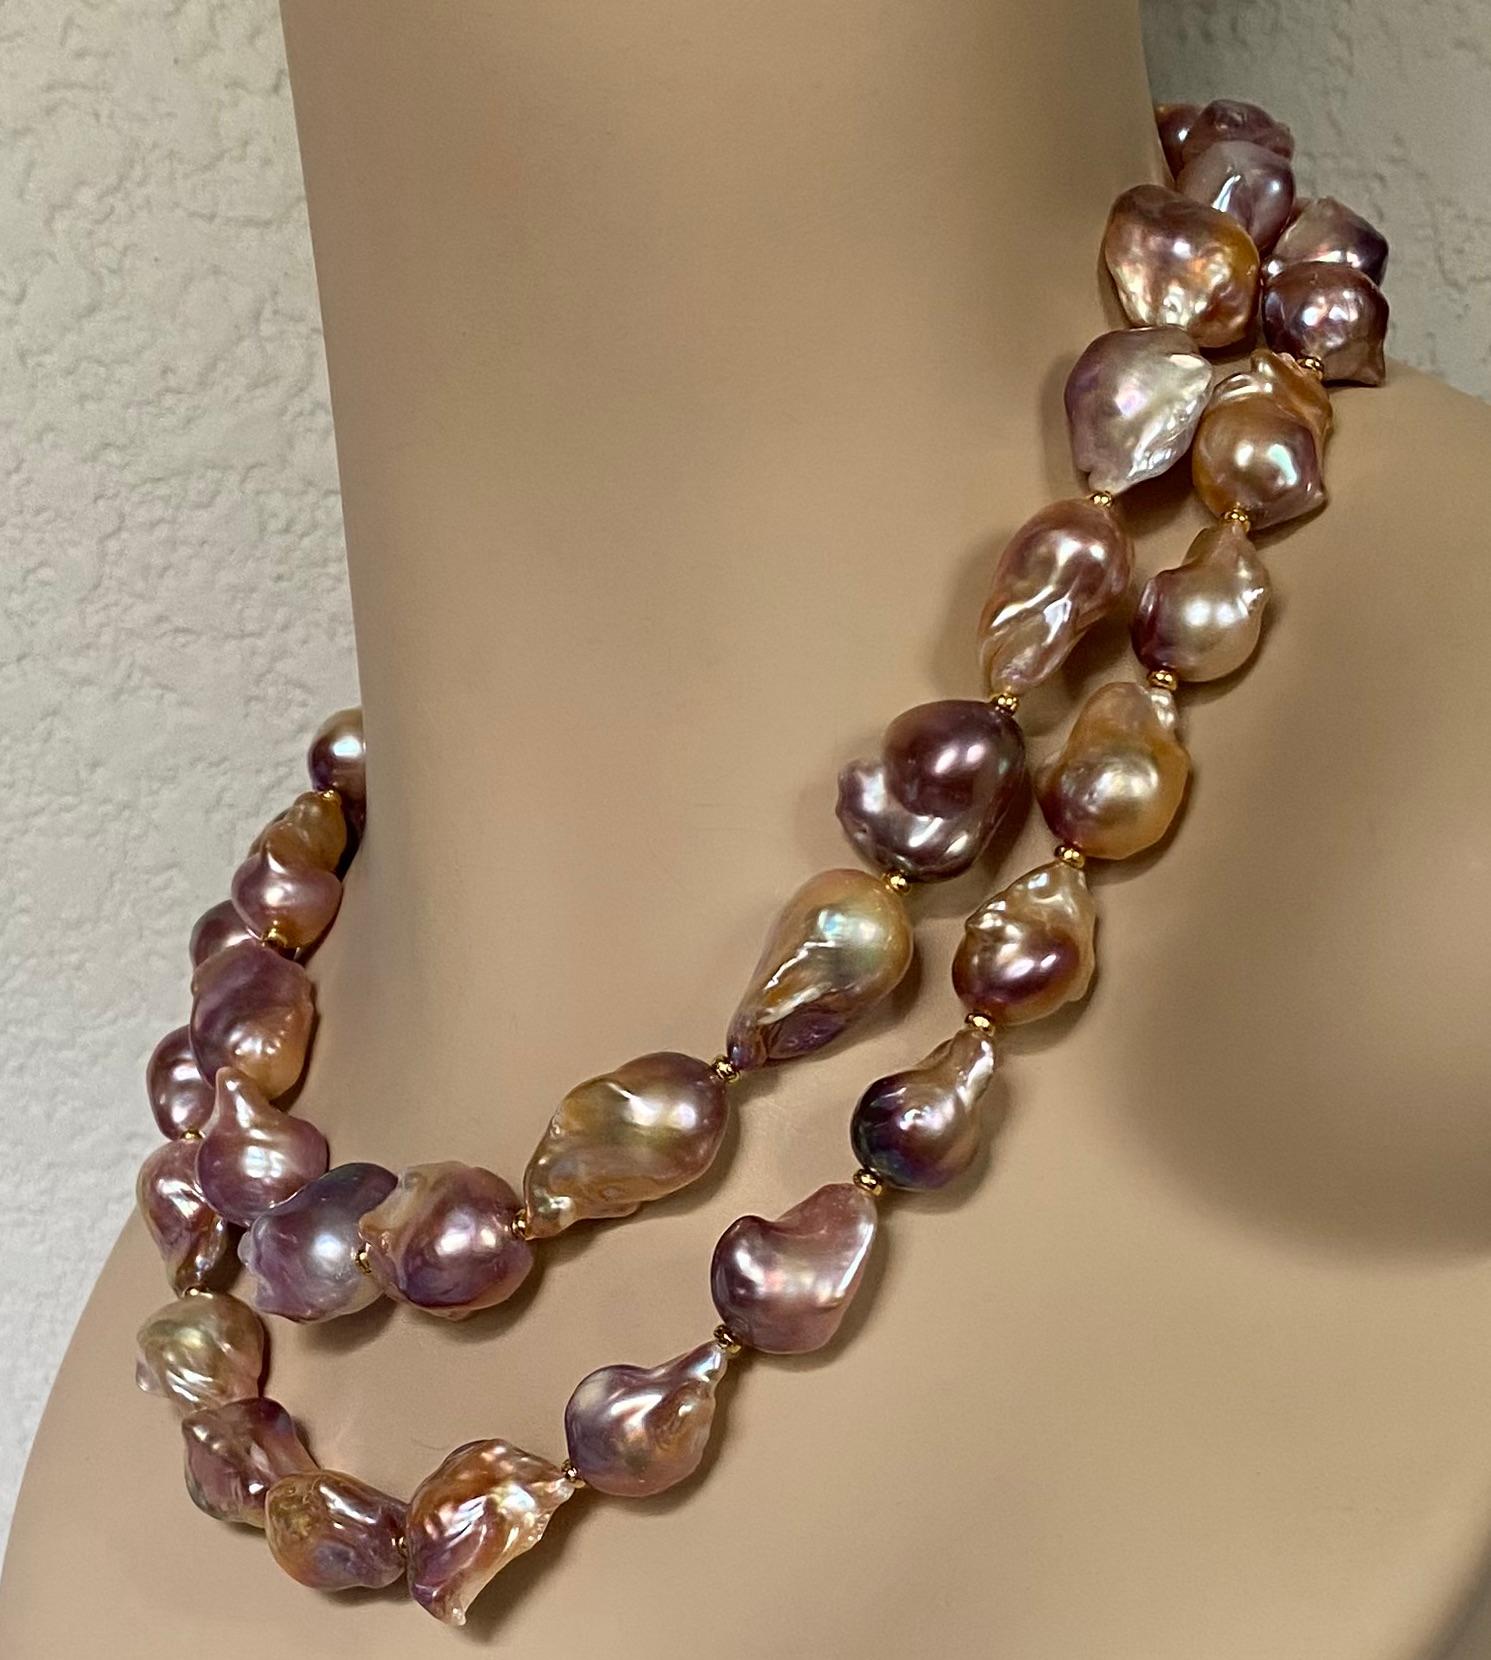 Les perles baroques sont enfilées dans un collier double dramatique.  Les perles (origine : Chine) sont connues sous le nom de 